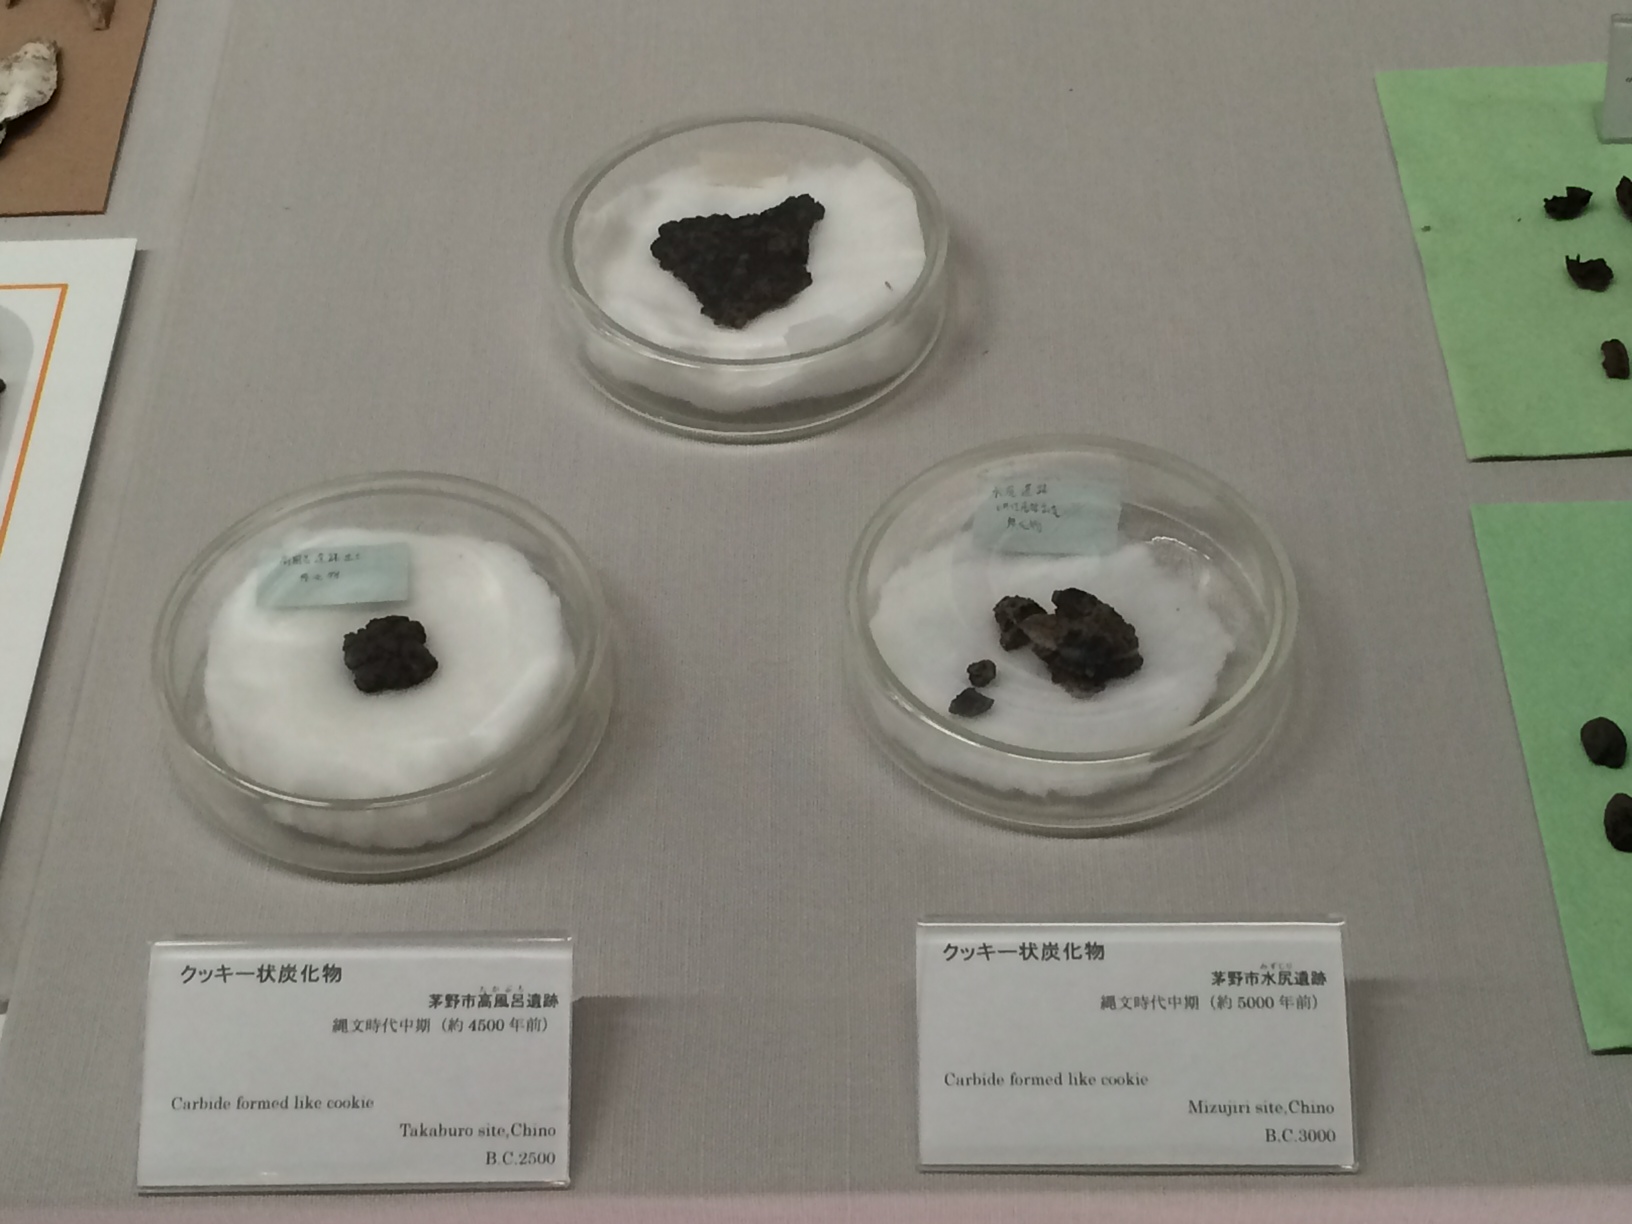 縄文時代の加工食品「クッキー状炭化物」